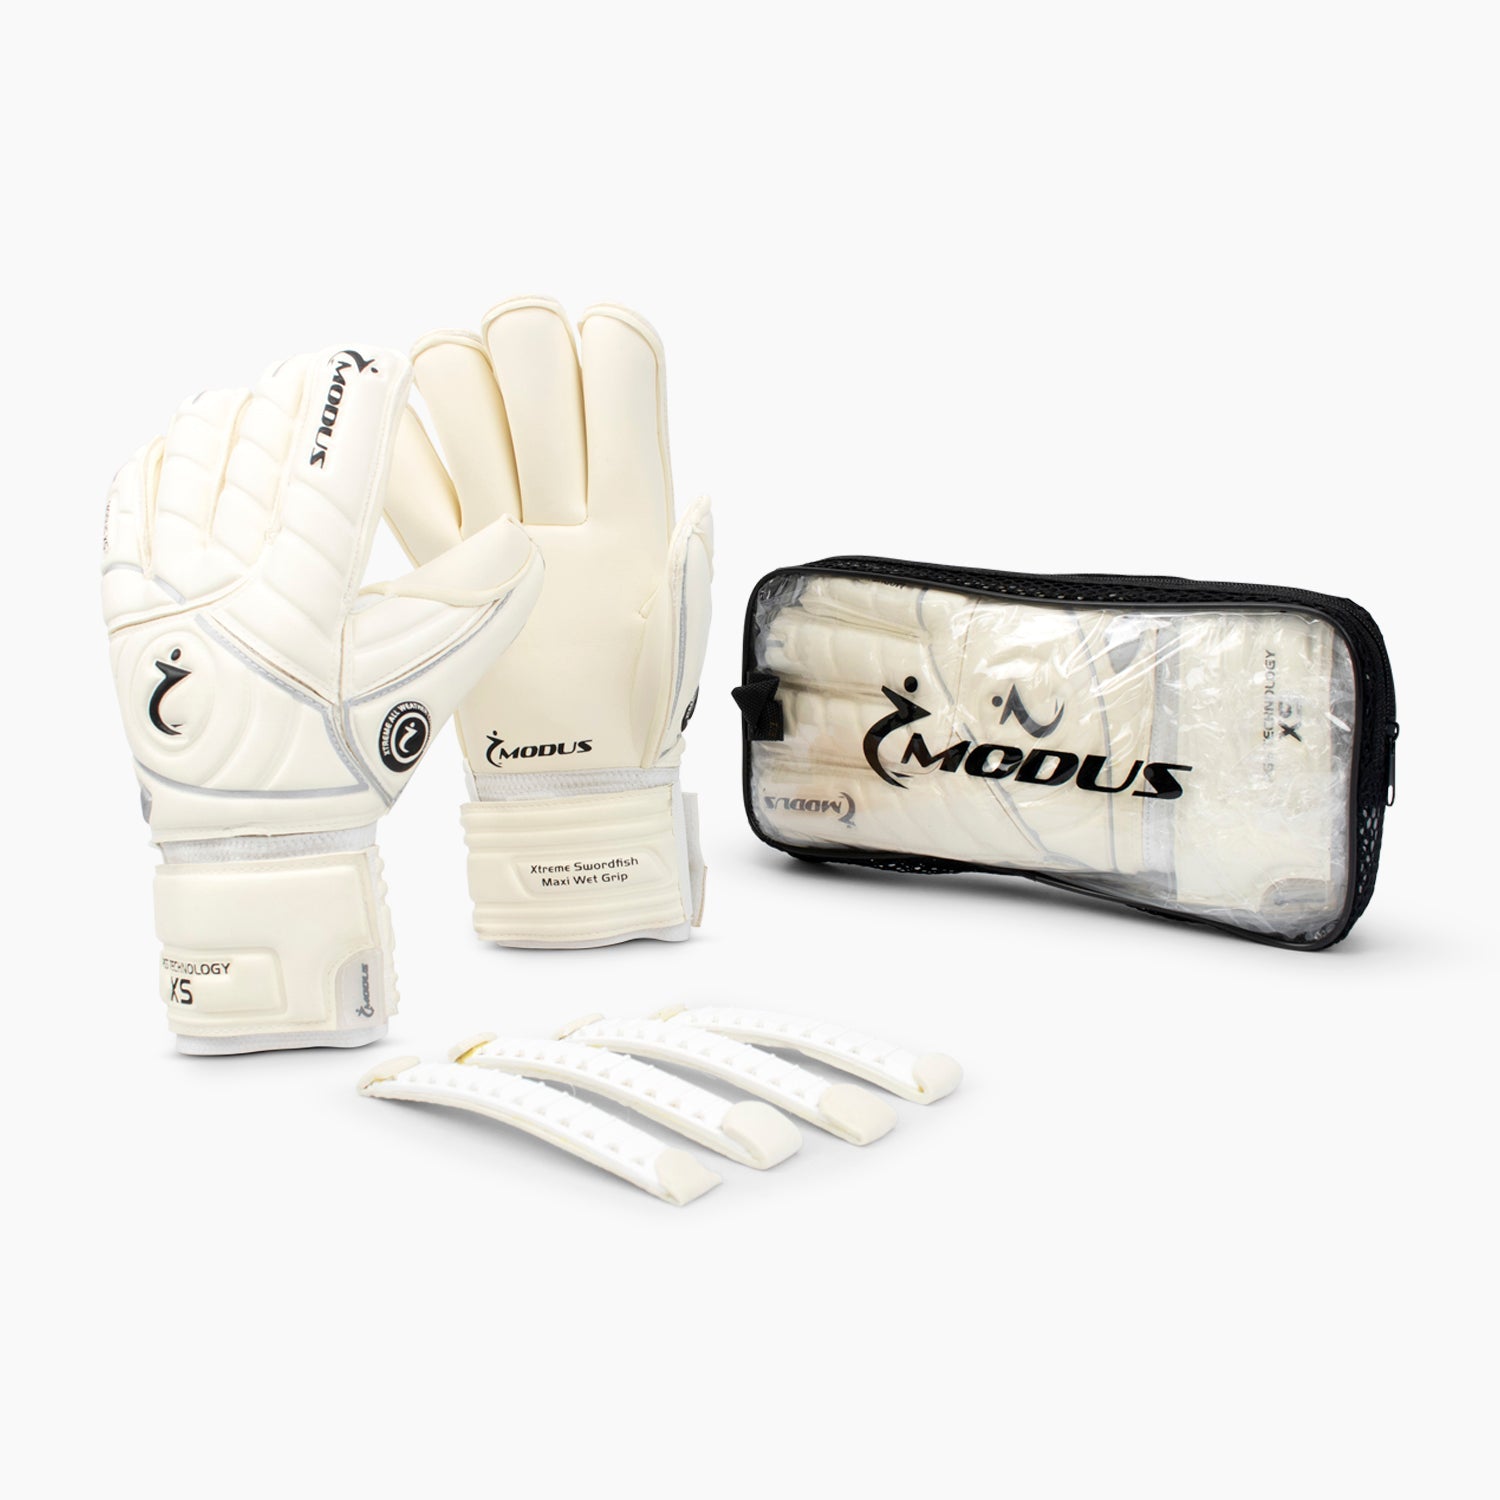 Buy Modus Swordfish PGS Gloves (2 Pair Deal)-Football Gloves-Modus-Splay UK Online